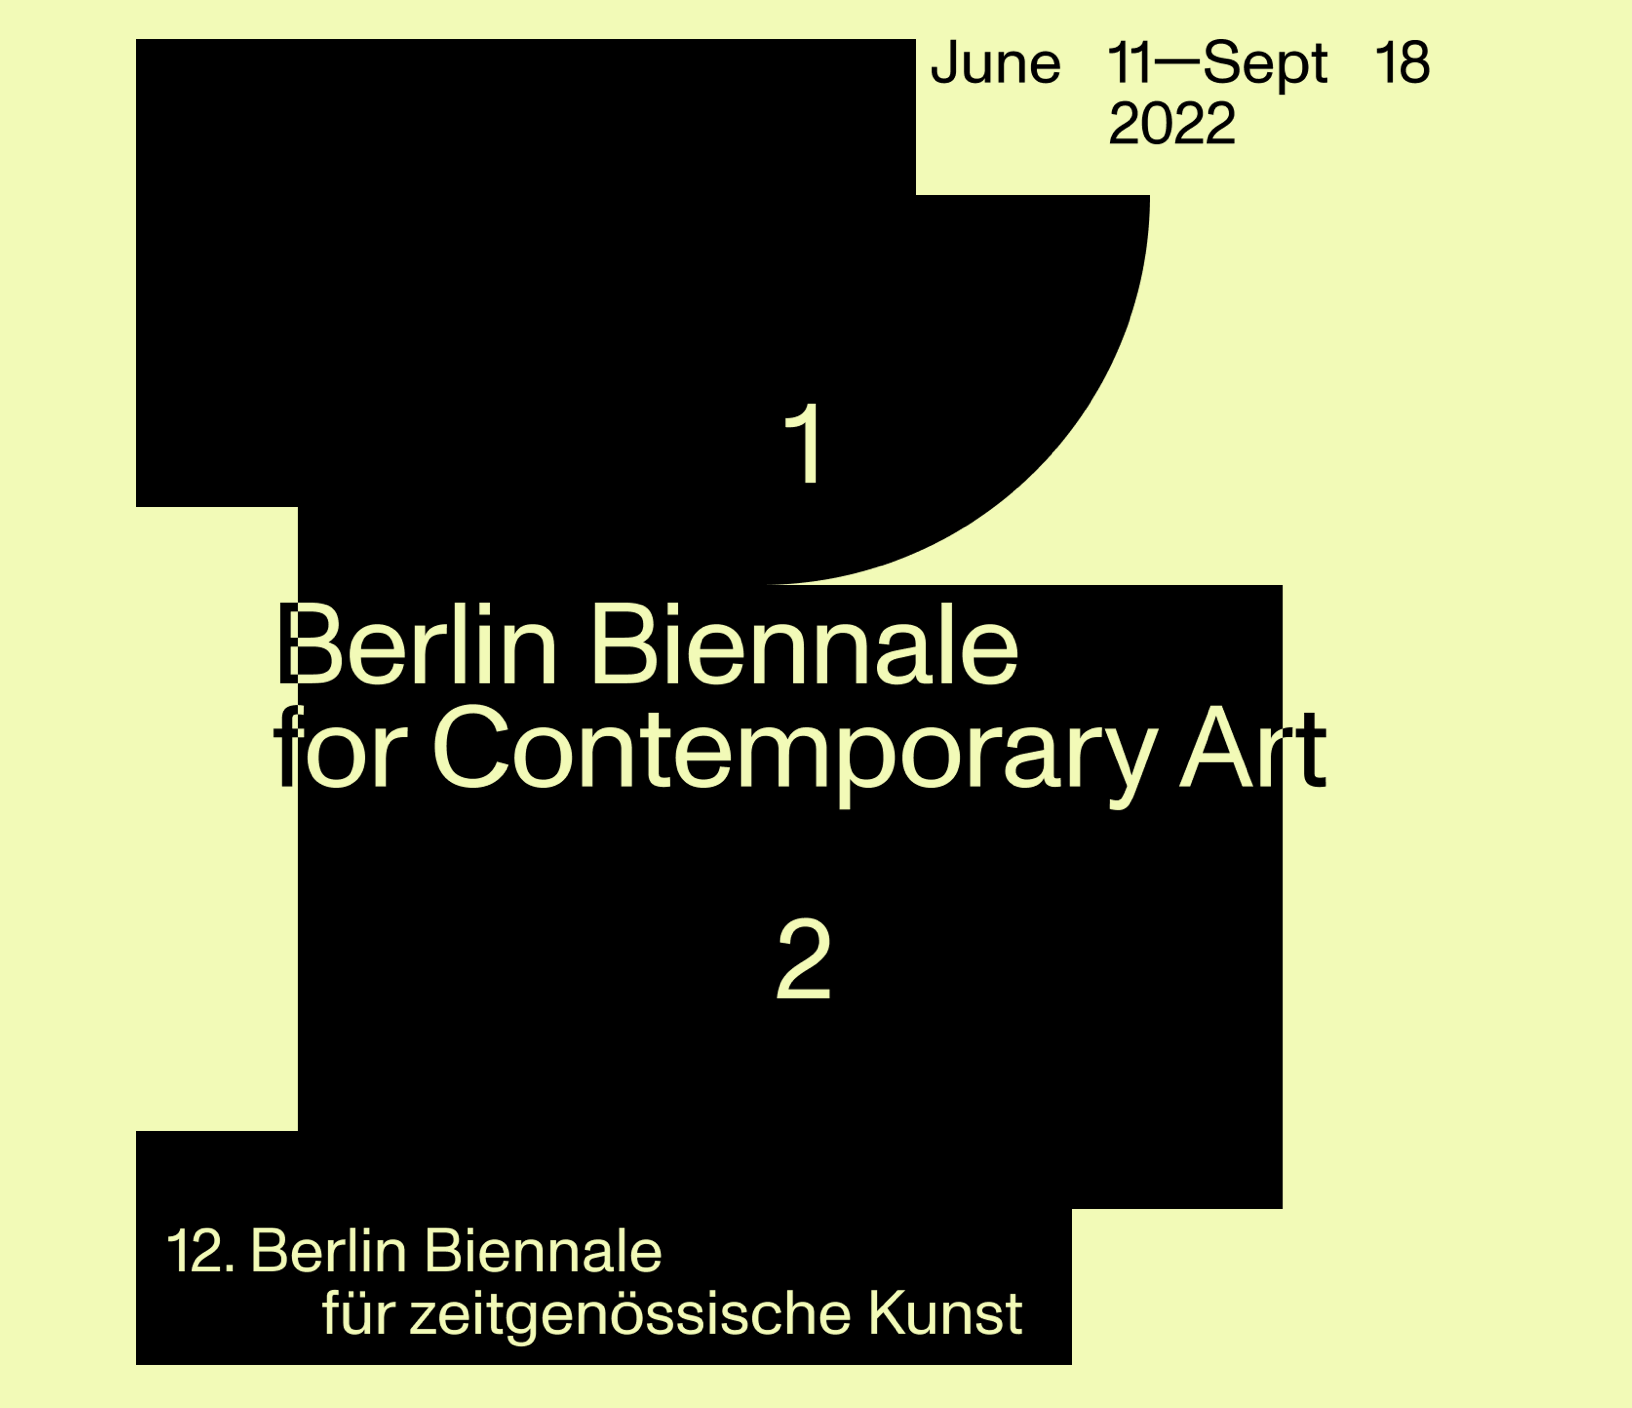 12th Berlin Biennale